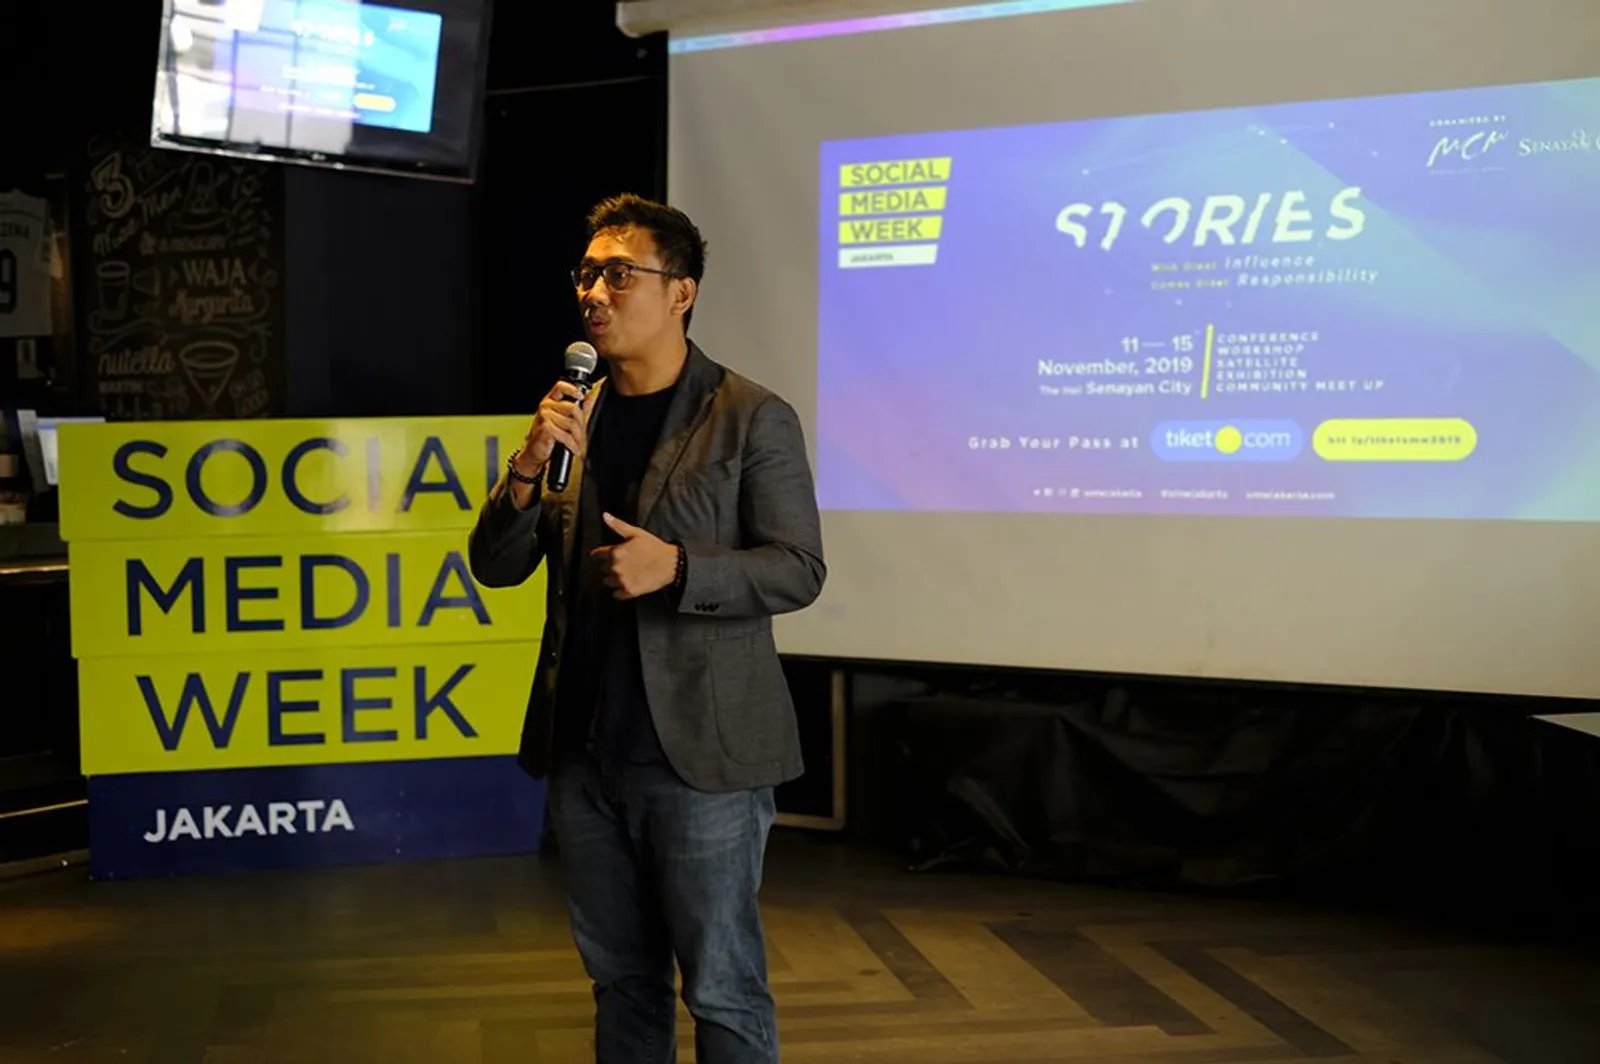 Social Media Week Ajak Masyarakat Sadar & Bertanggung Jawab di Medsos